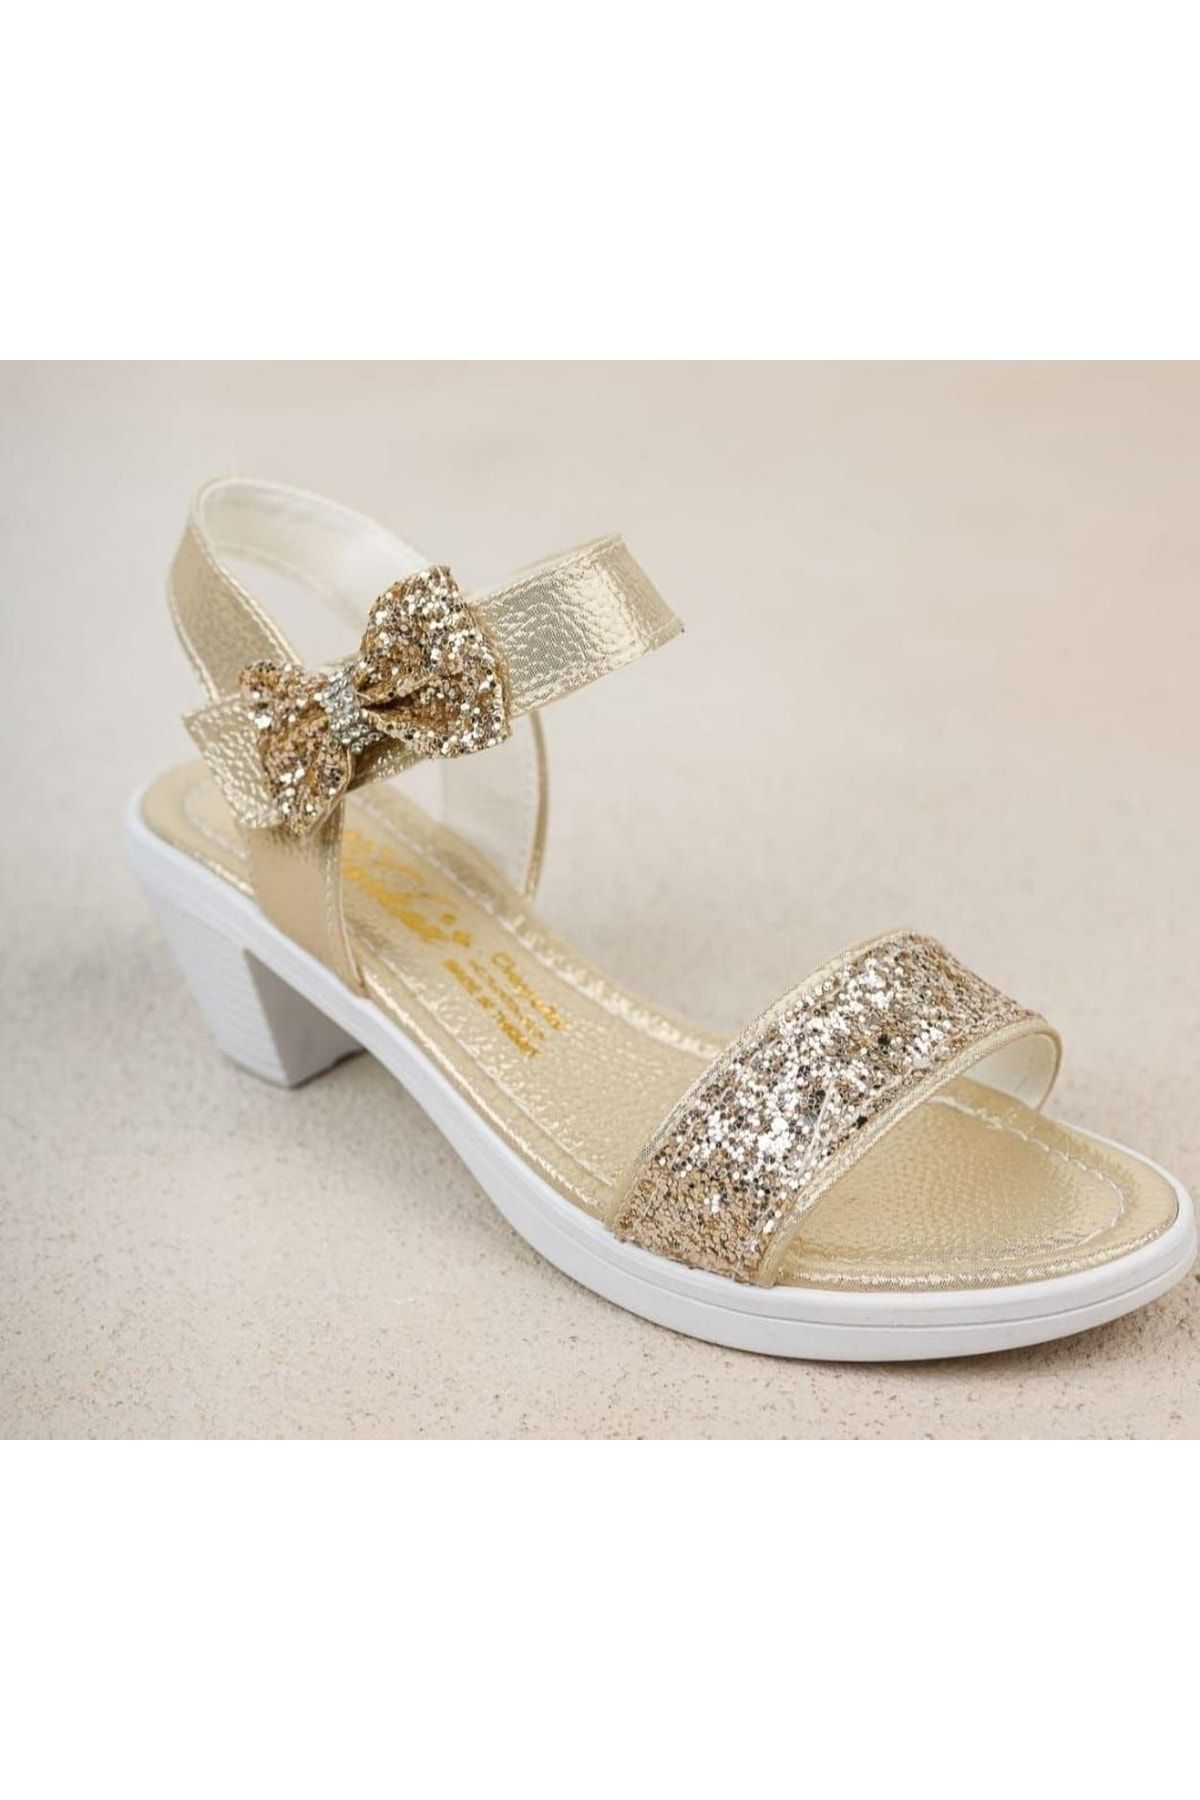 Sare Çocuk Giyim Kız Çocuk Topuklu Abiye Ayakkabı Sandalet Tipi Gold Simli